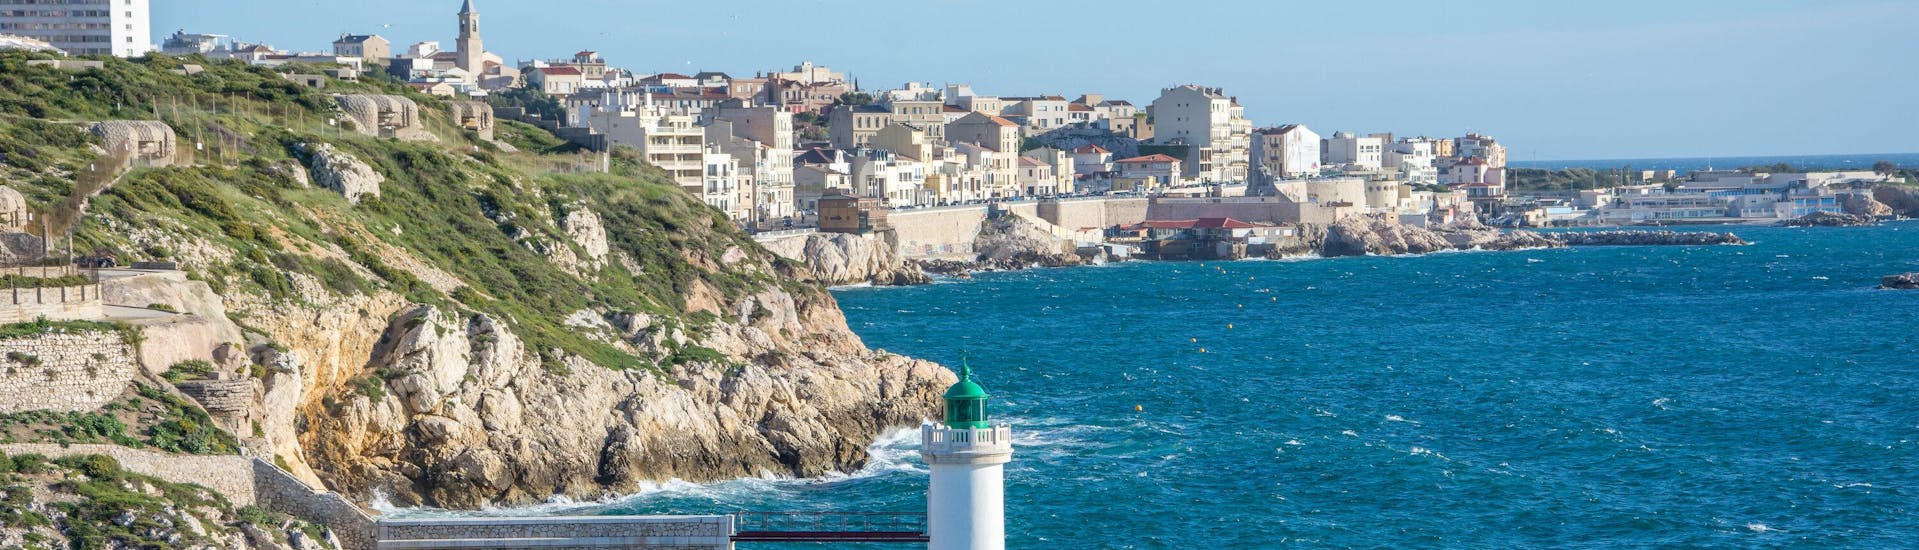 Blick auf die Küste und den Leuchtturm von Porticcio in Frankreich.